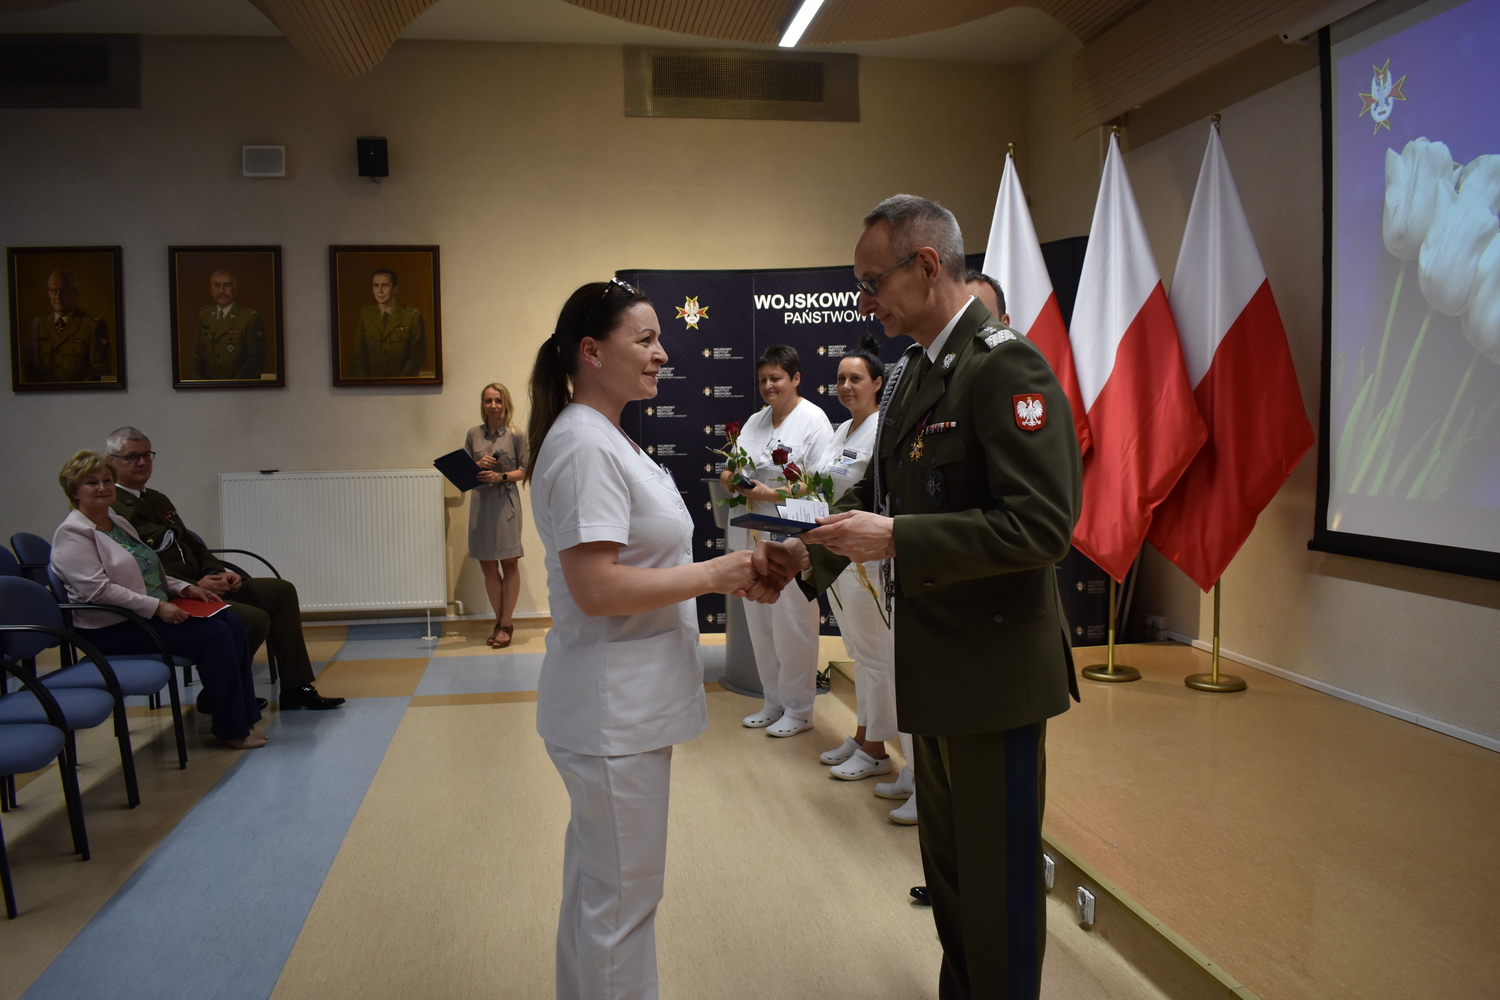 Odznaczenia i Wyróżnienia dla Diagnostów Laboratoryjnych w Wojskowym Instytucie Medycznym w Warszawie